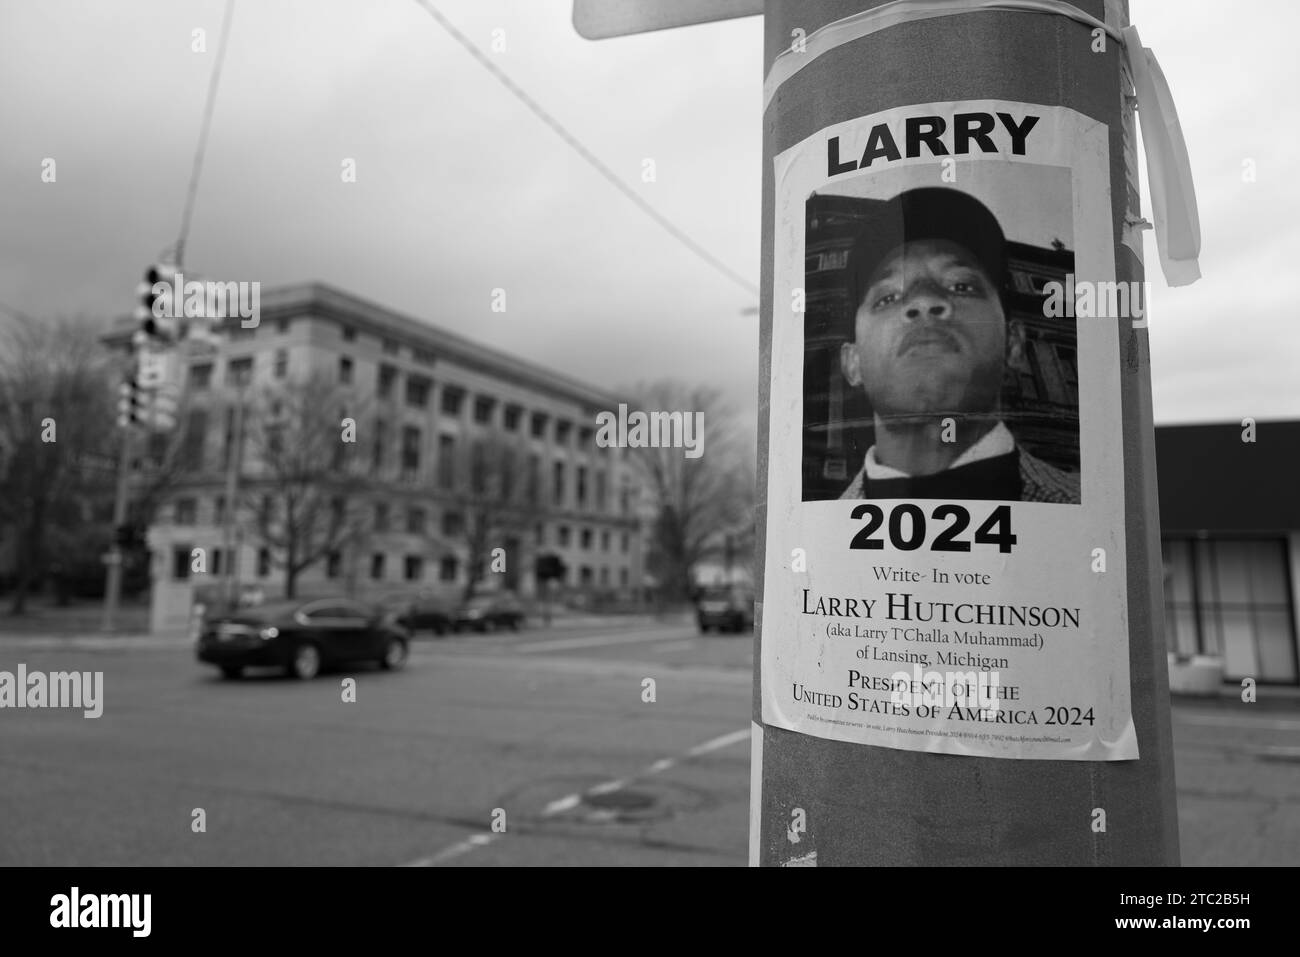 Signe de promotion de Larry Hutchinson comme candidat écrit pour l'élection présidentielle américaine de 2024, dans le centre-ville de Flint Michigan USA Banque D'Images